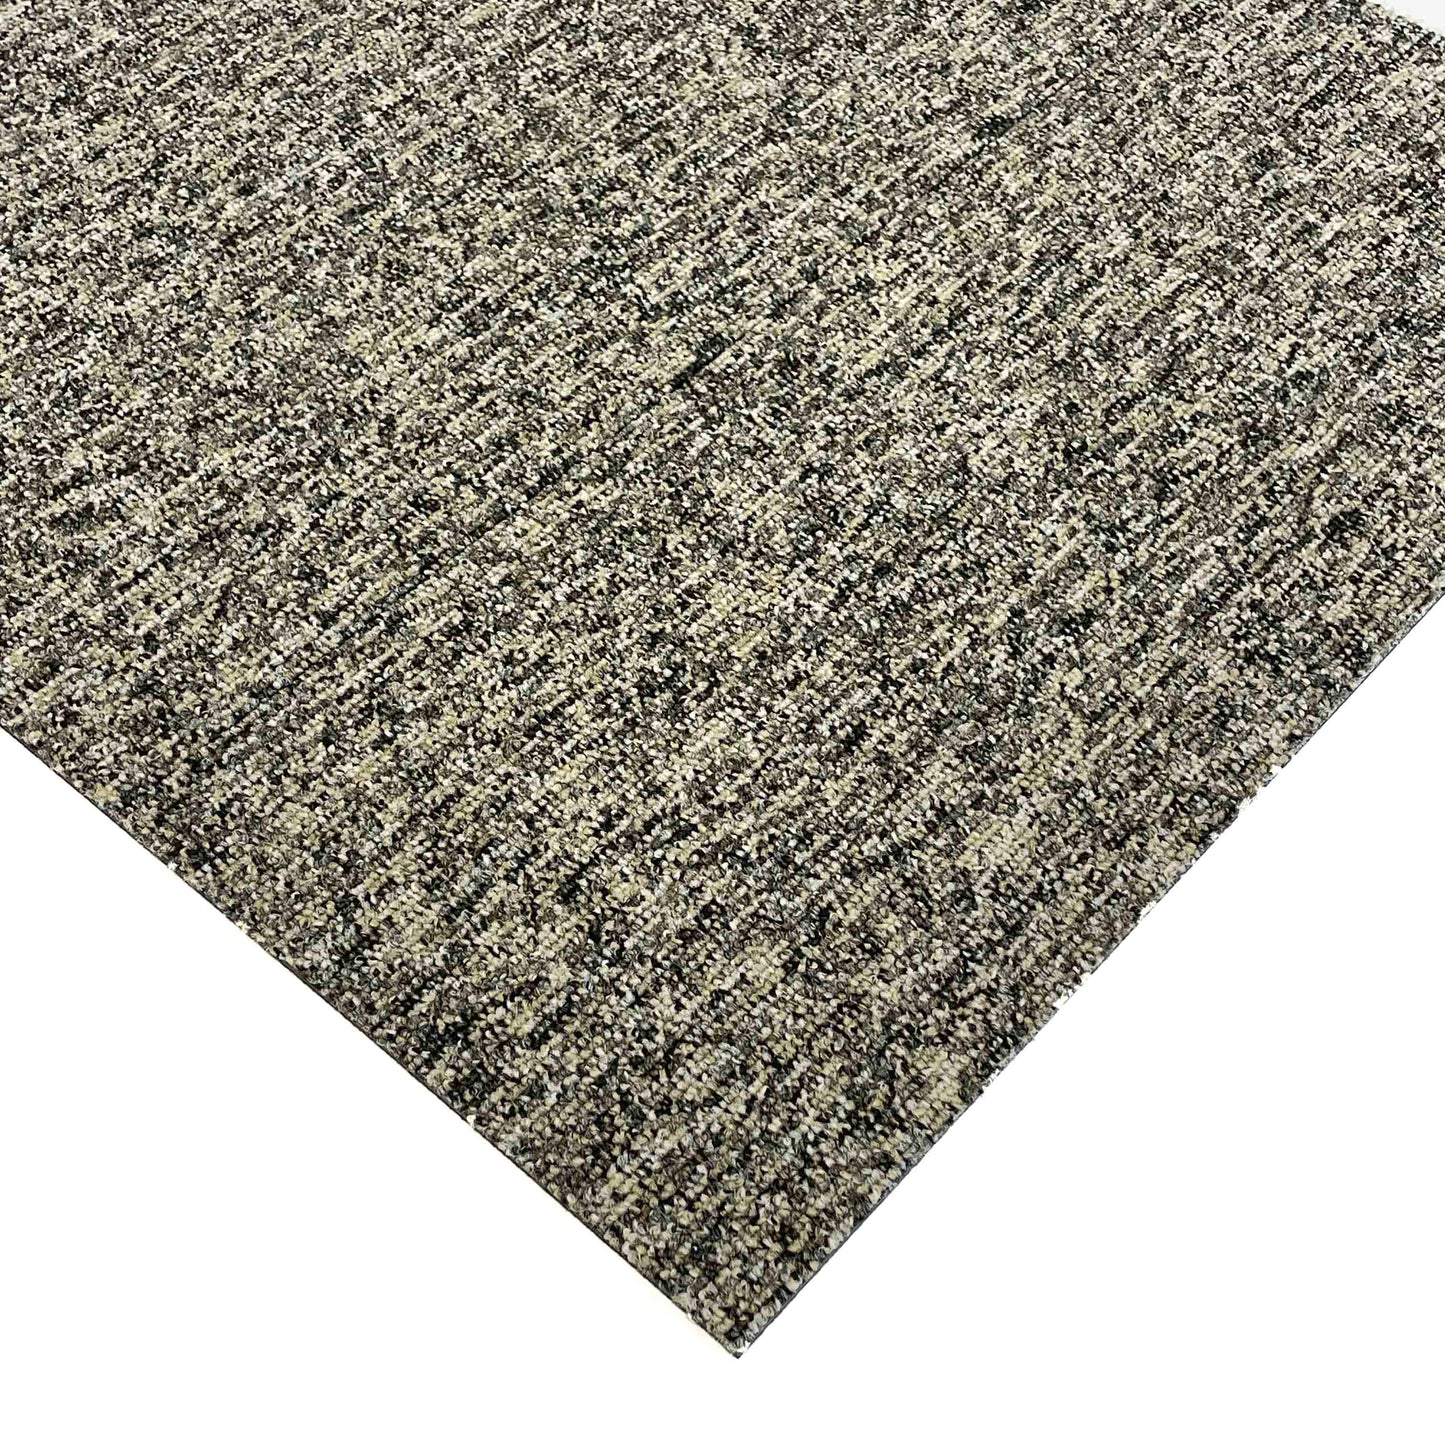 Green and Greys Speckled Carpet Tile